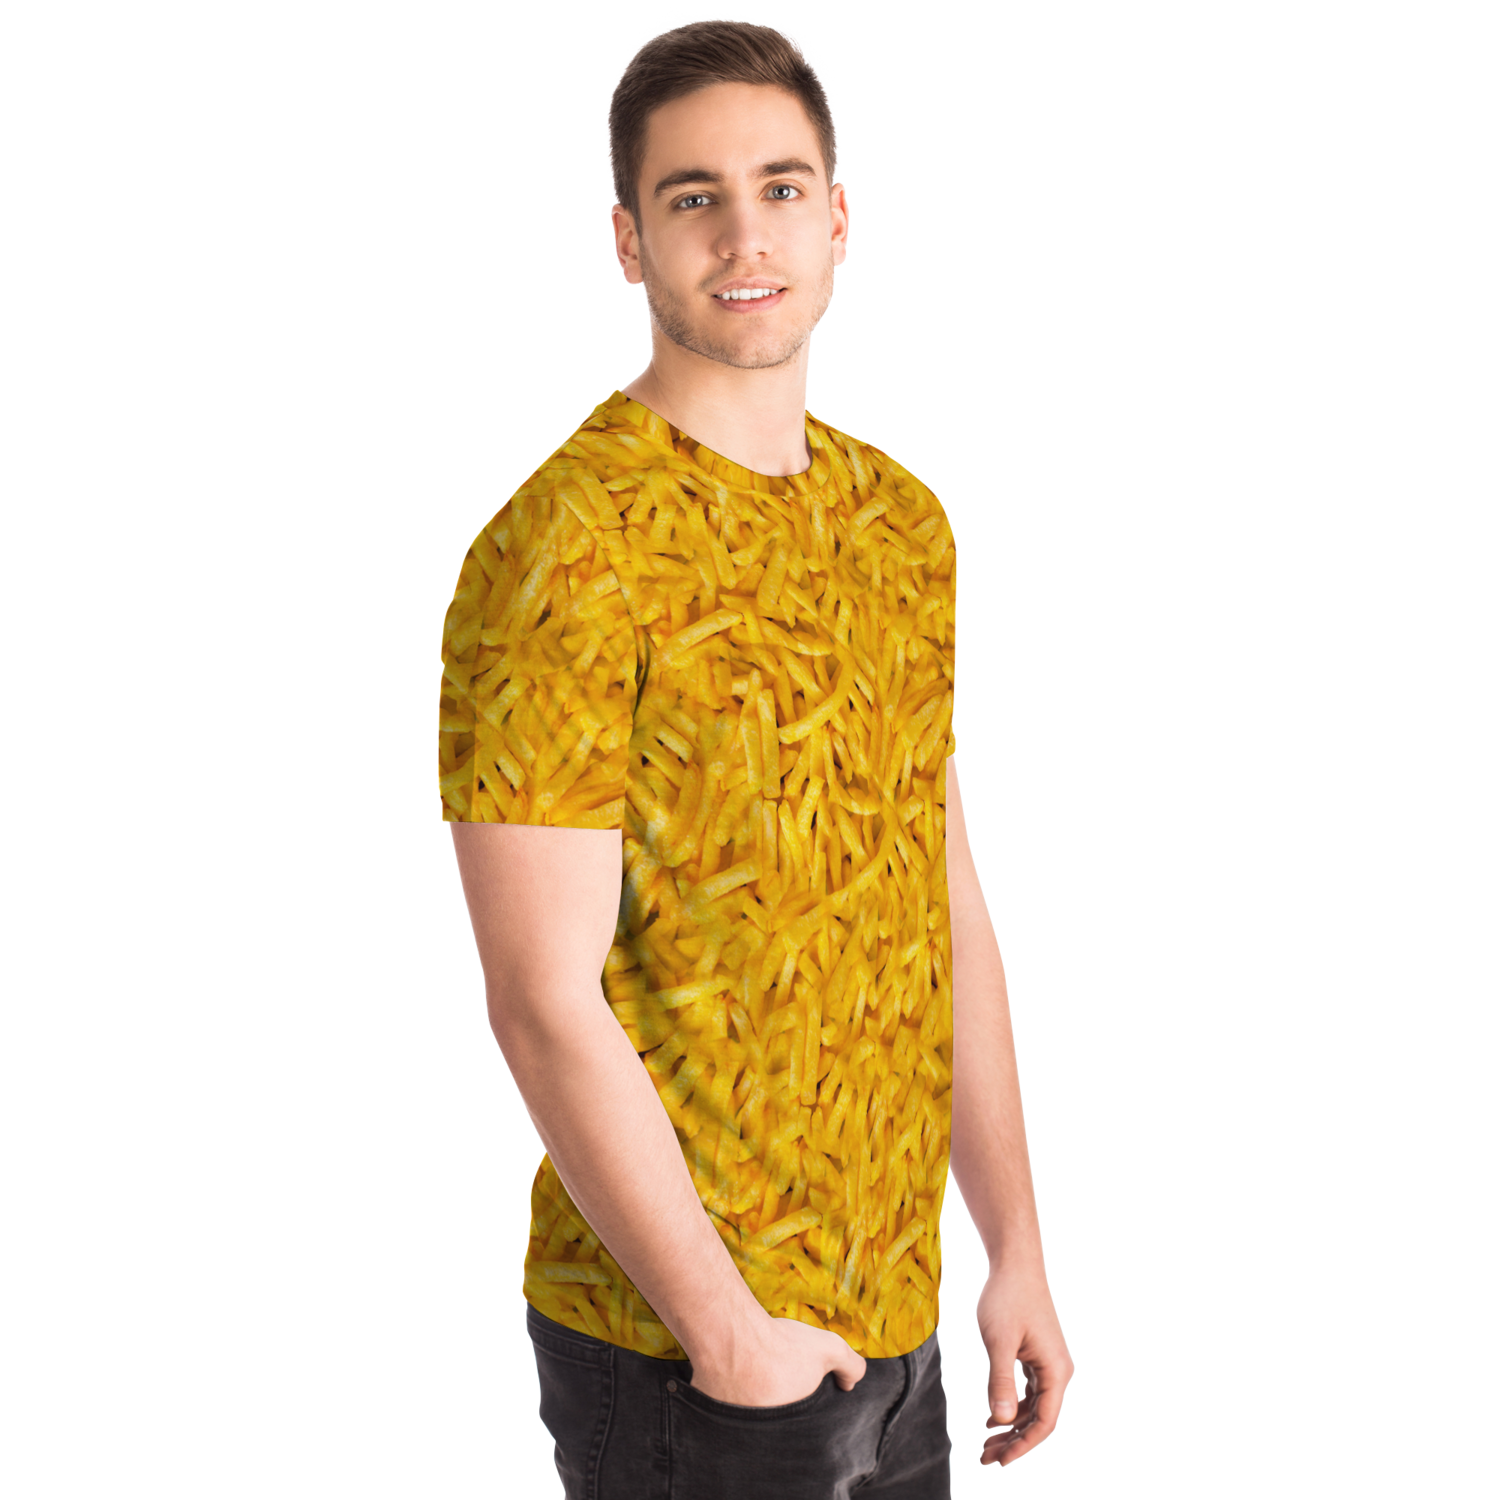 <alt.Fries Forever T-shirt - Taufaa>